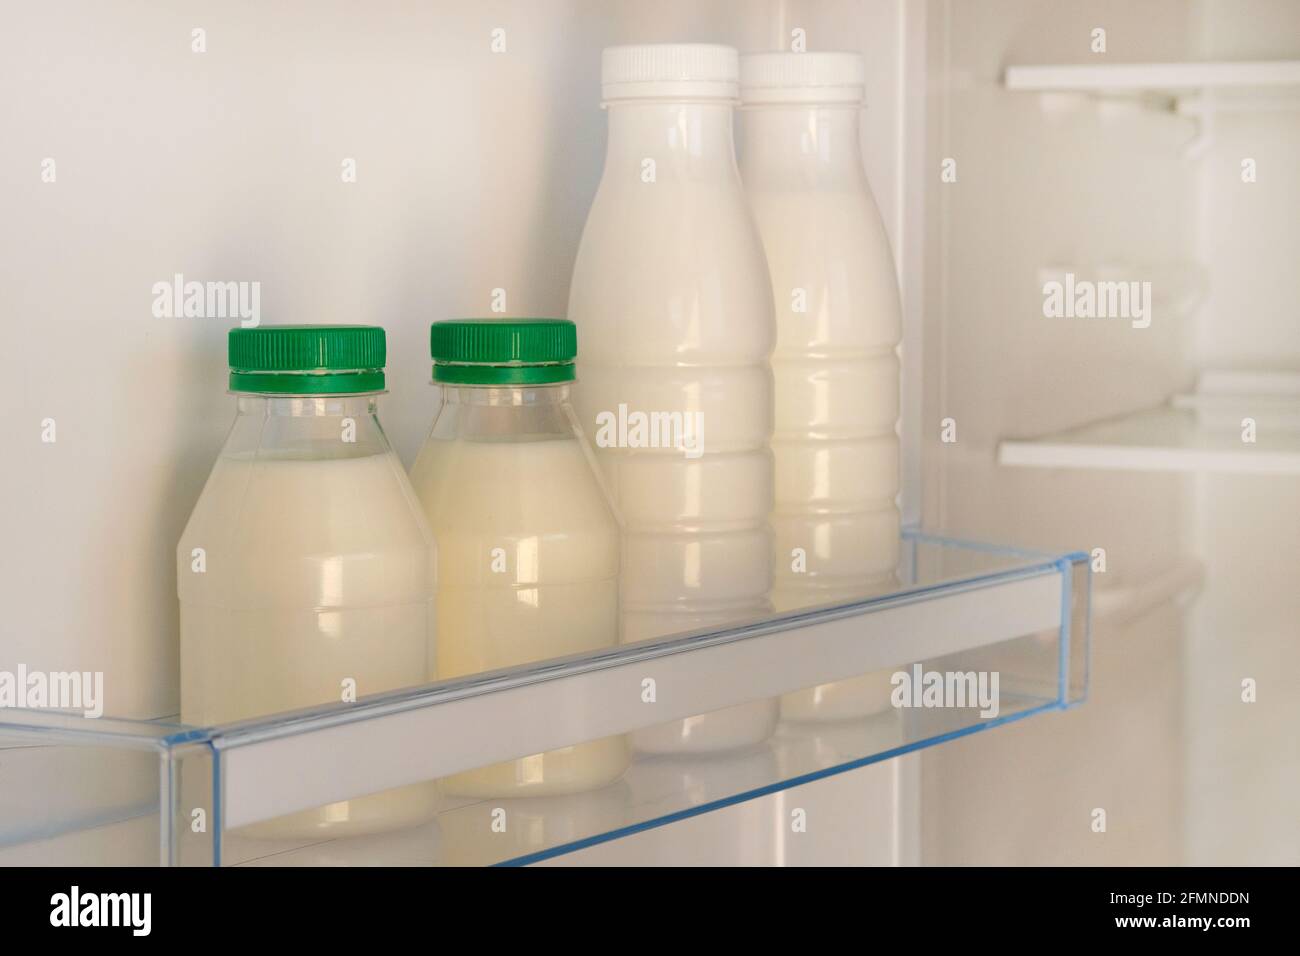 Weiße Flaschen mit grünem Joghurt-Deckel auf dem Regal des offenen, leeren Kühlschranks. Gewichtsverlust Diät-Konzept. Fermentierte Lebensmittel. Stockfoto